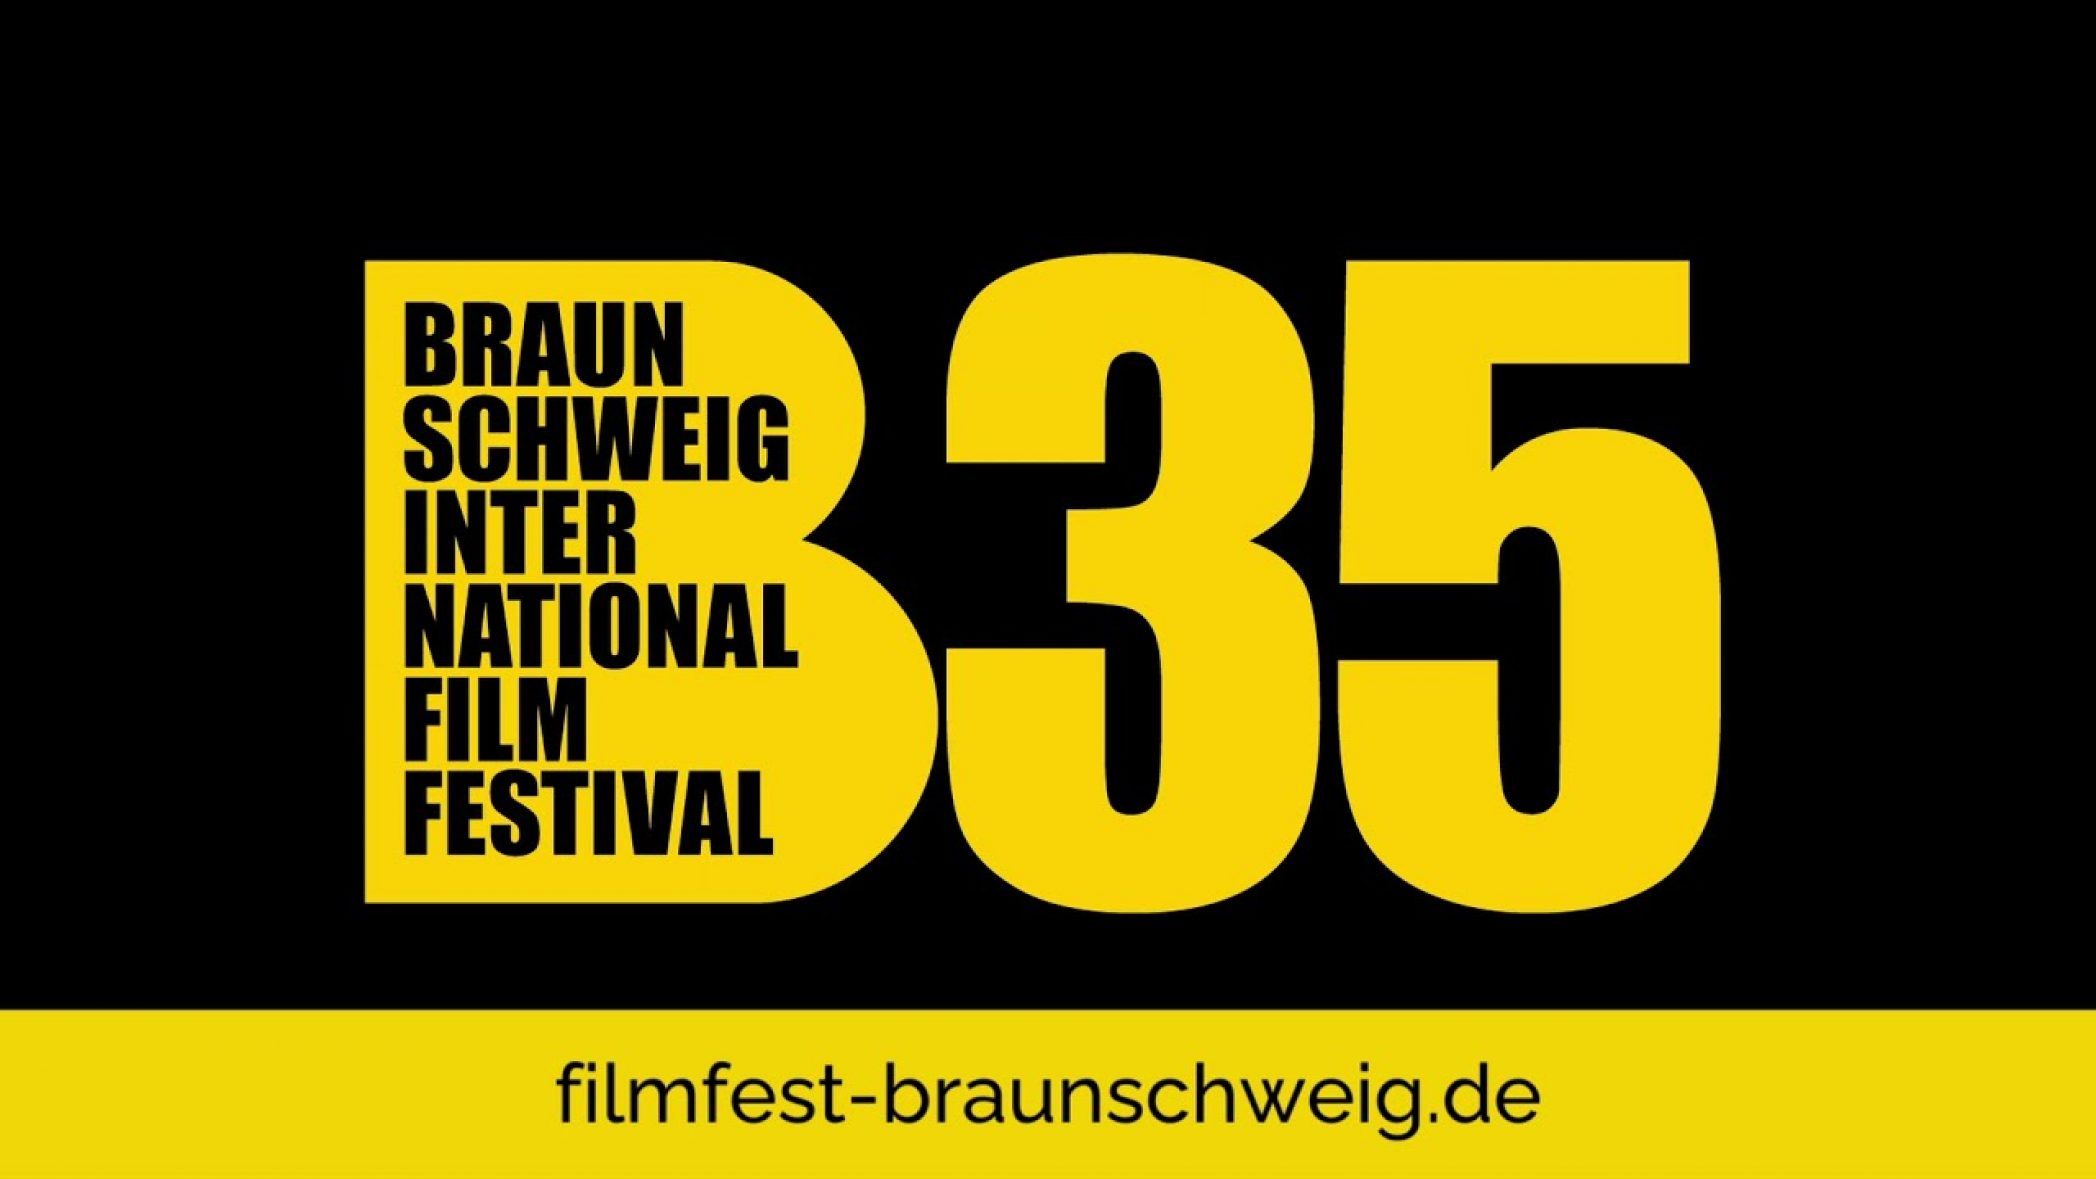 Braunschweig Film Festival